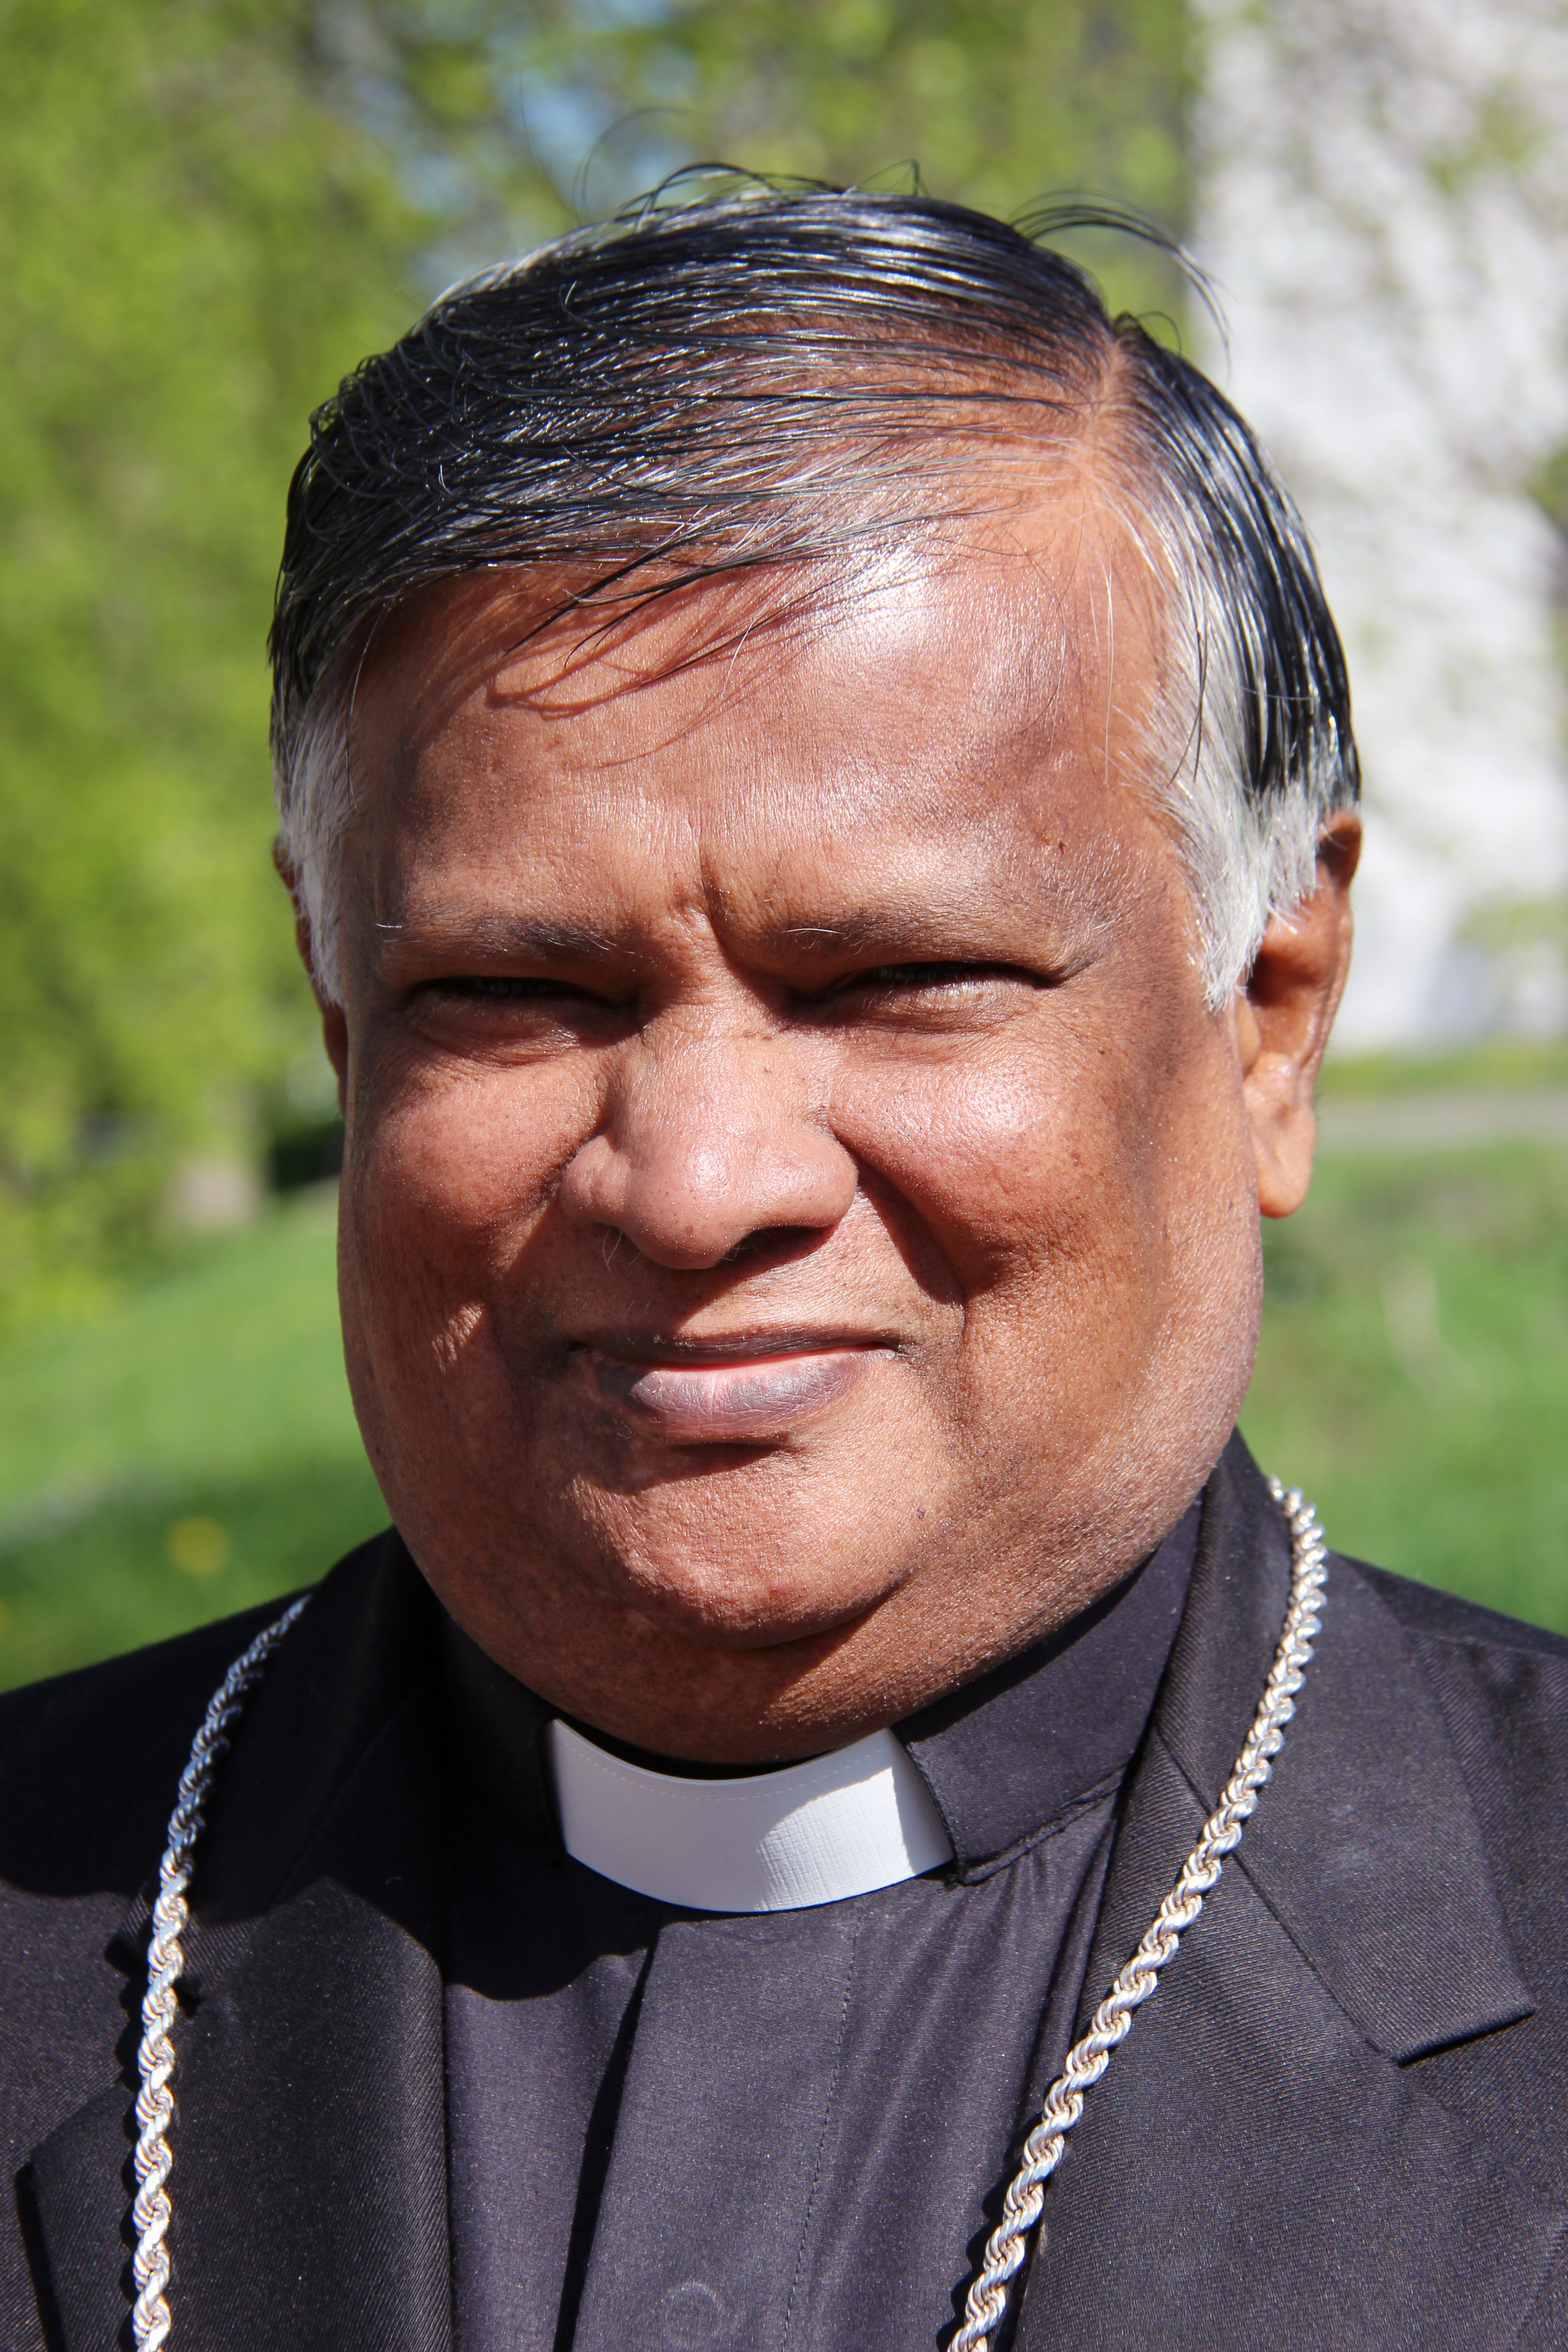 Preocupa a obispo de India la creciente ola de ataques por grupos hindúes fundamentalistas